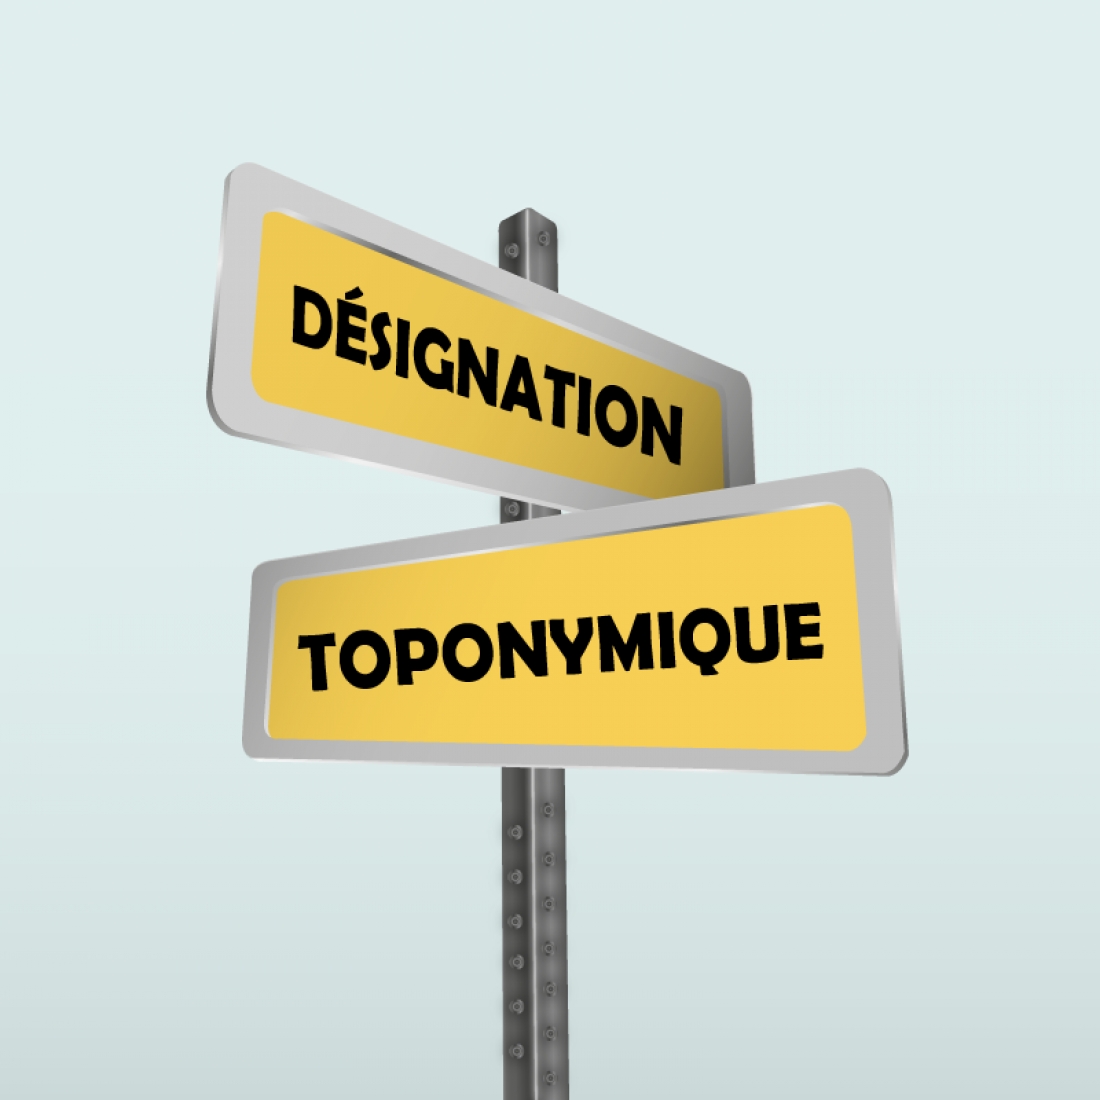 La Ville de Gaspé procède à la formation d’un comité de toponymie et à l’adoption d’une politique de dénomination toponymique